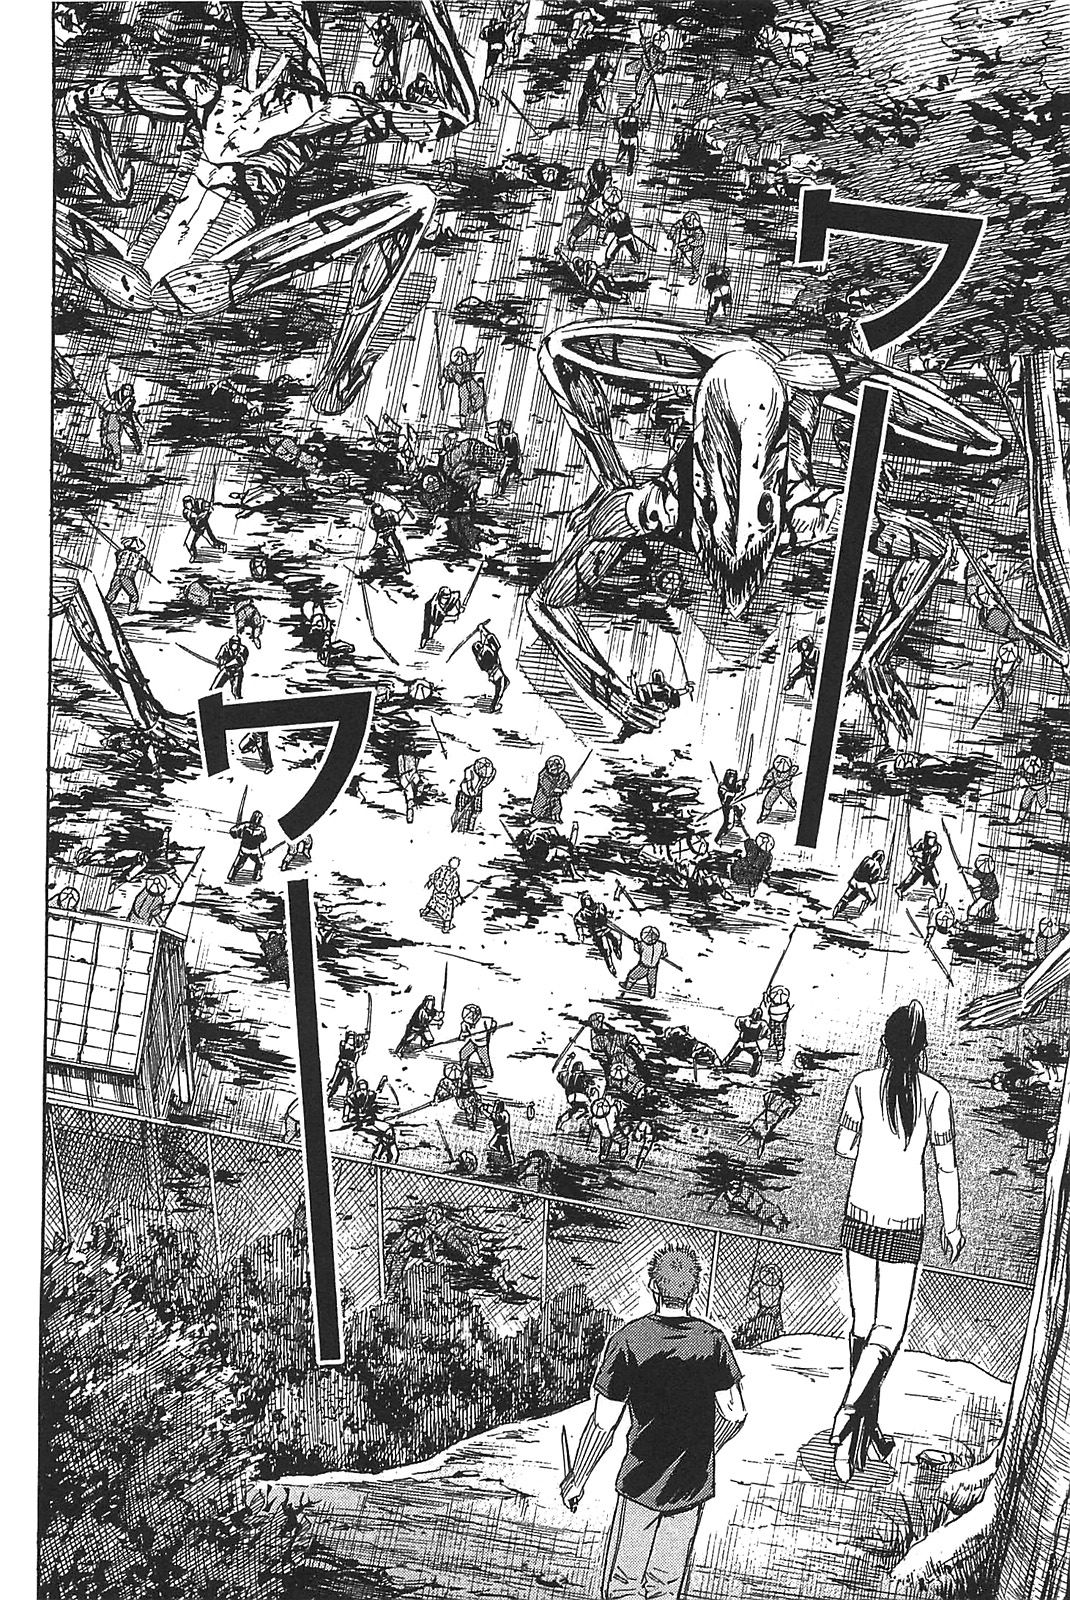 Higanjima Saigo no 47 Hiai Vol. 3 Ch. 29 Darkness